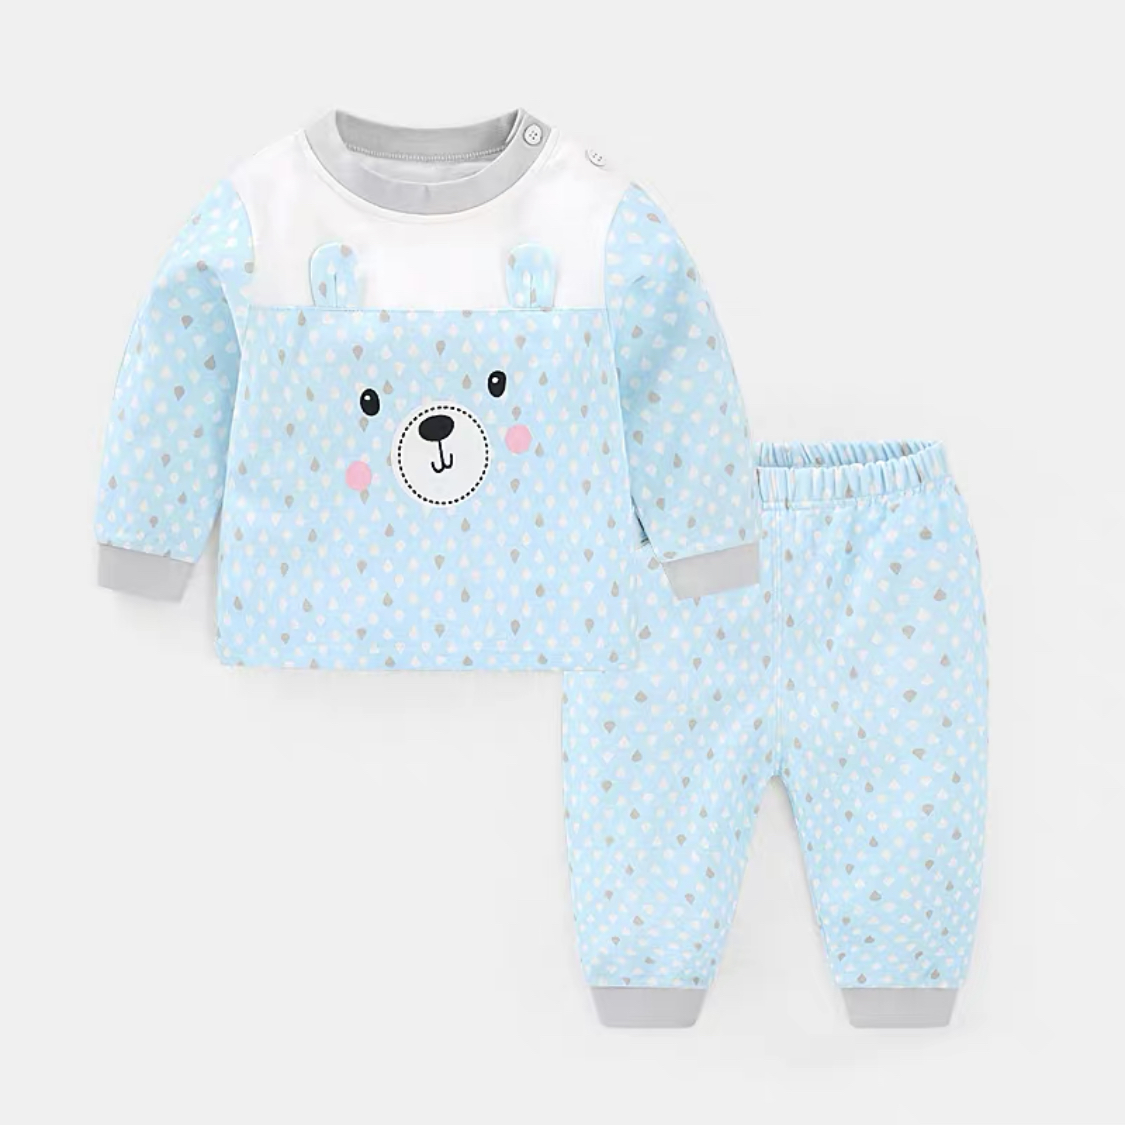 Pajamas with a bear